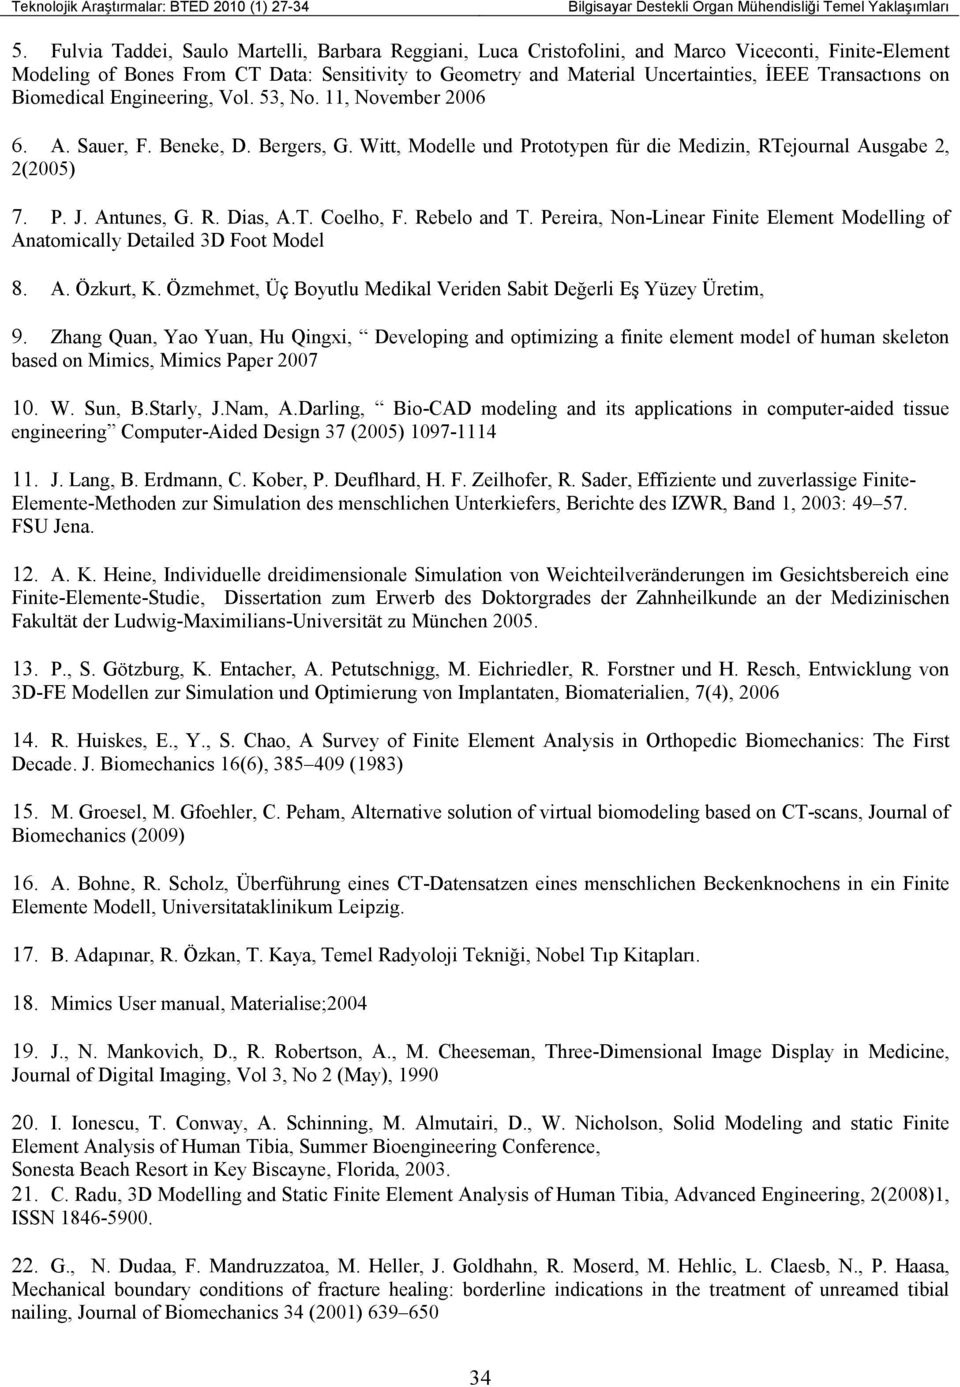 Transactıons on Biomedical Engineering, Vol. 53, No. 11, November 2006 6. A. Sauer, F. Beneke, D. Bergers, G. Witt, Modelle und Prototypen für die Medizin, RTejournal Ausgabe 2, 2(2005) 7. P. J.